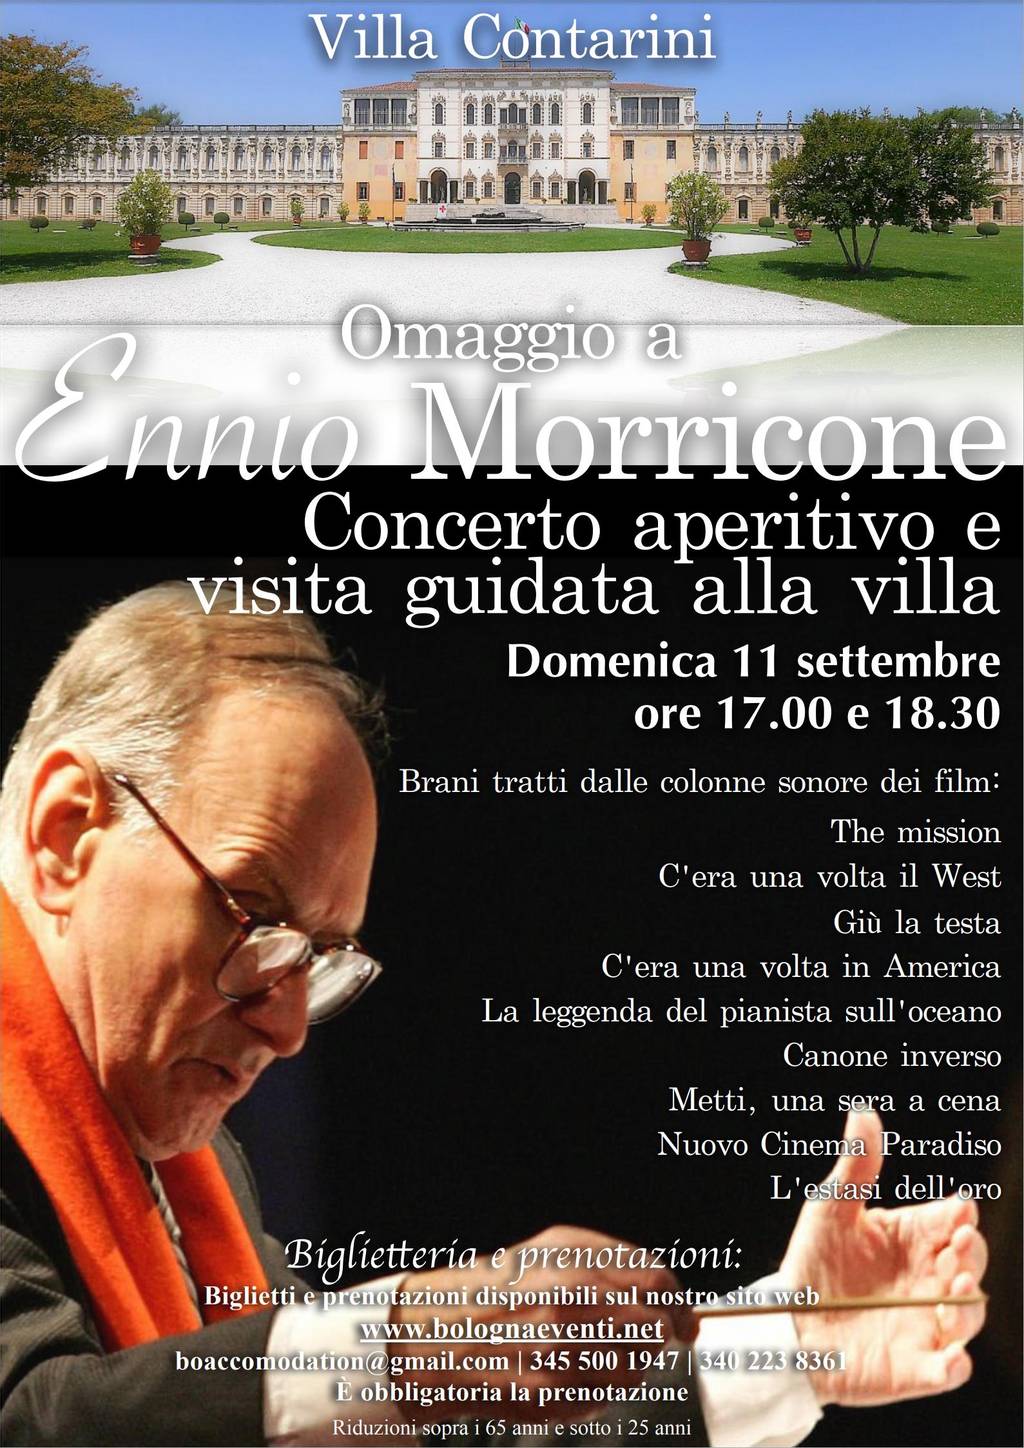 Concerto aperitivo - Omaggio a Ennio Morricone